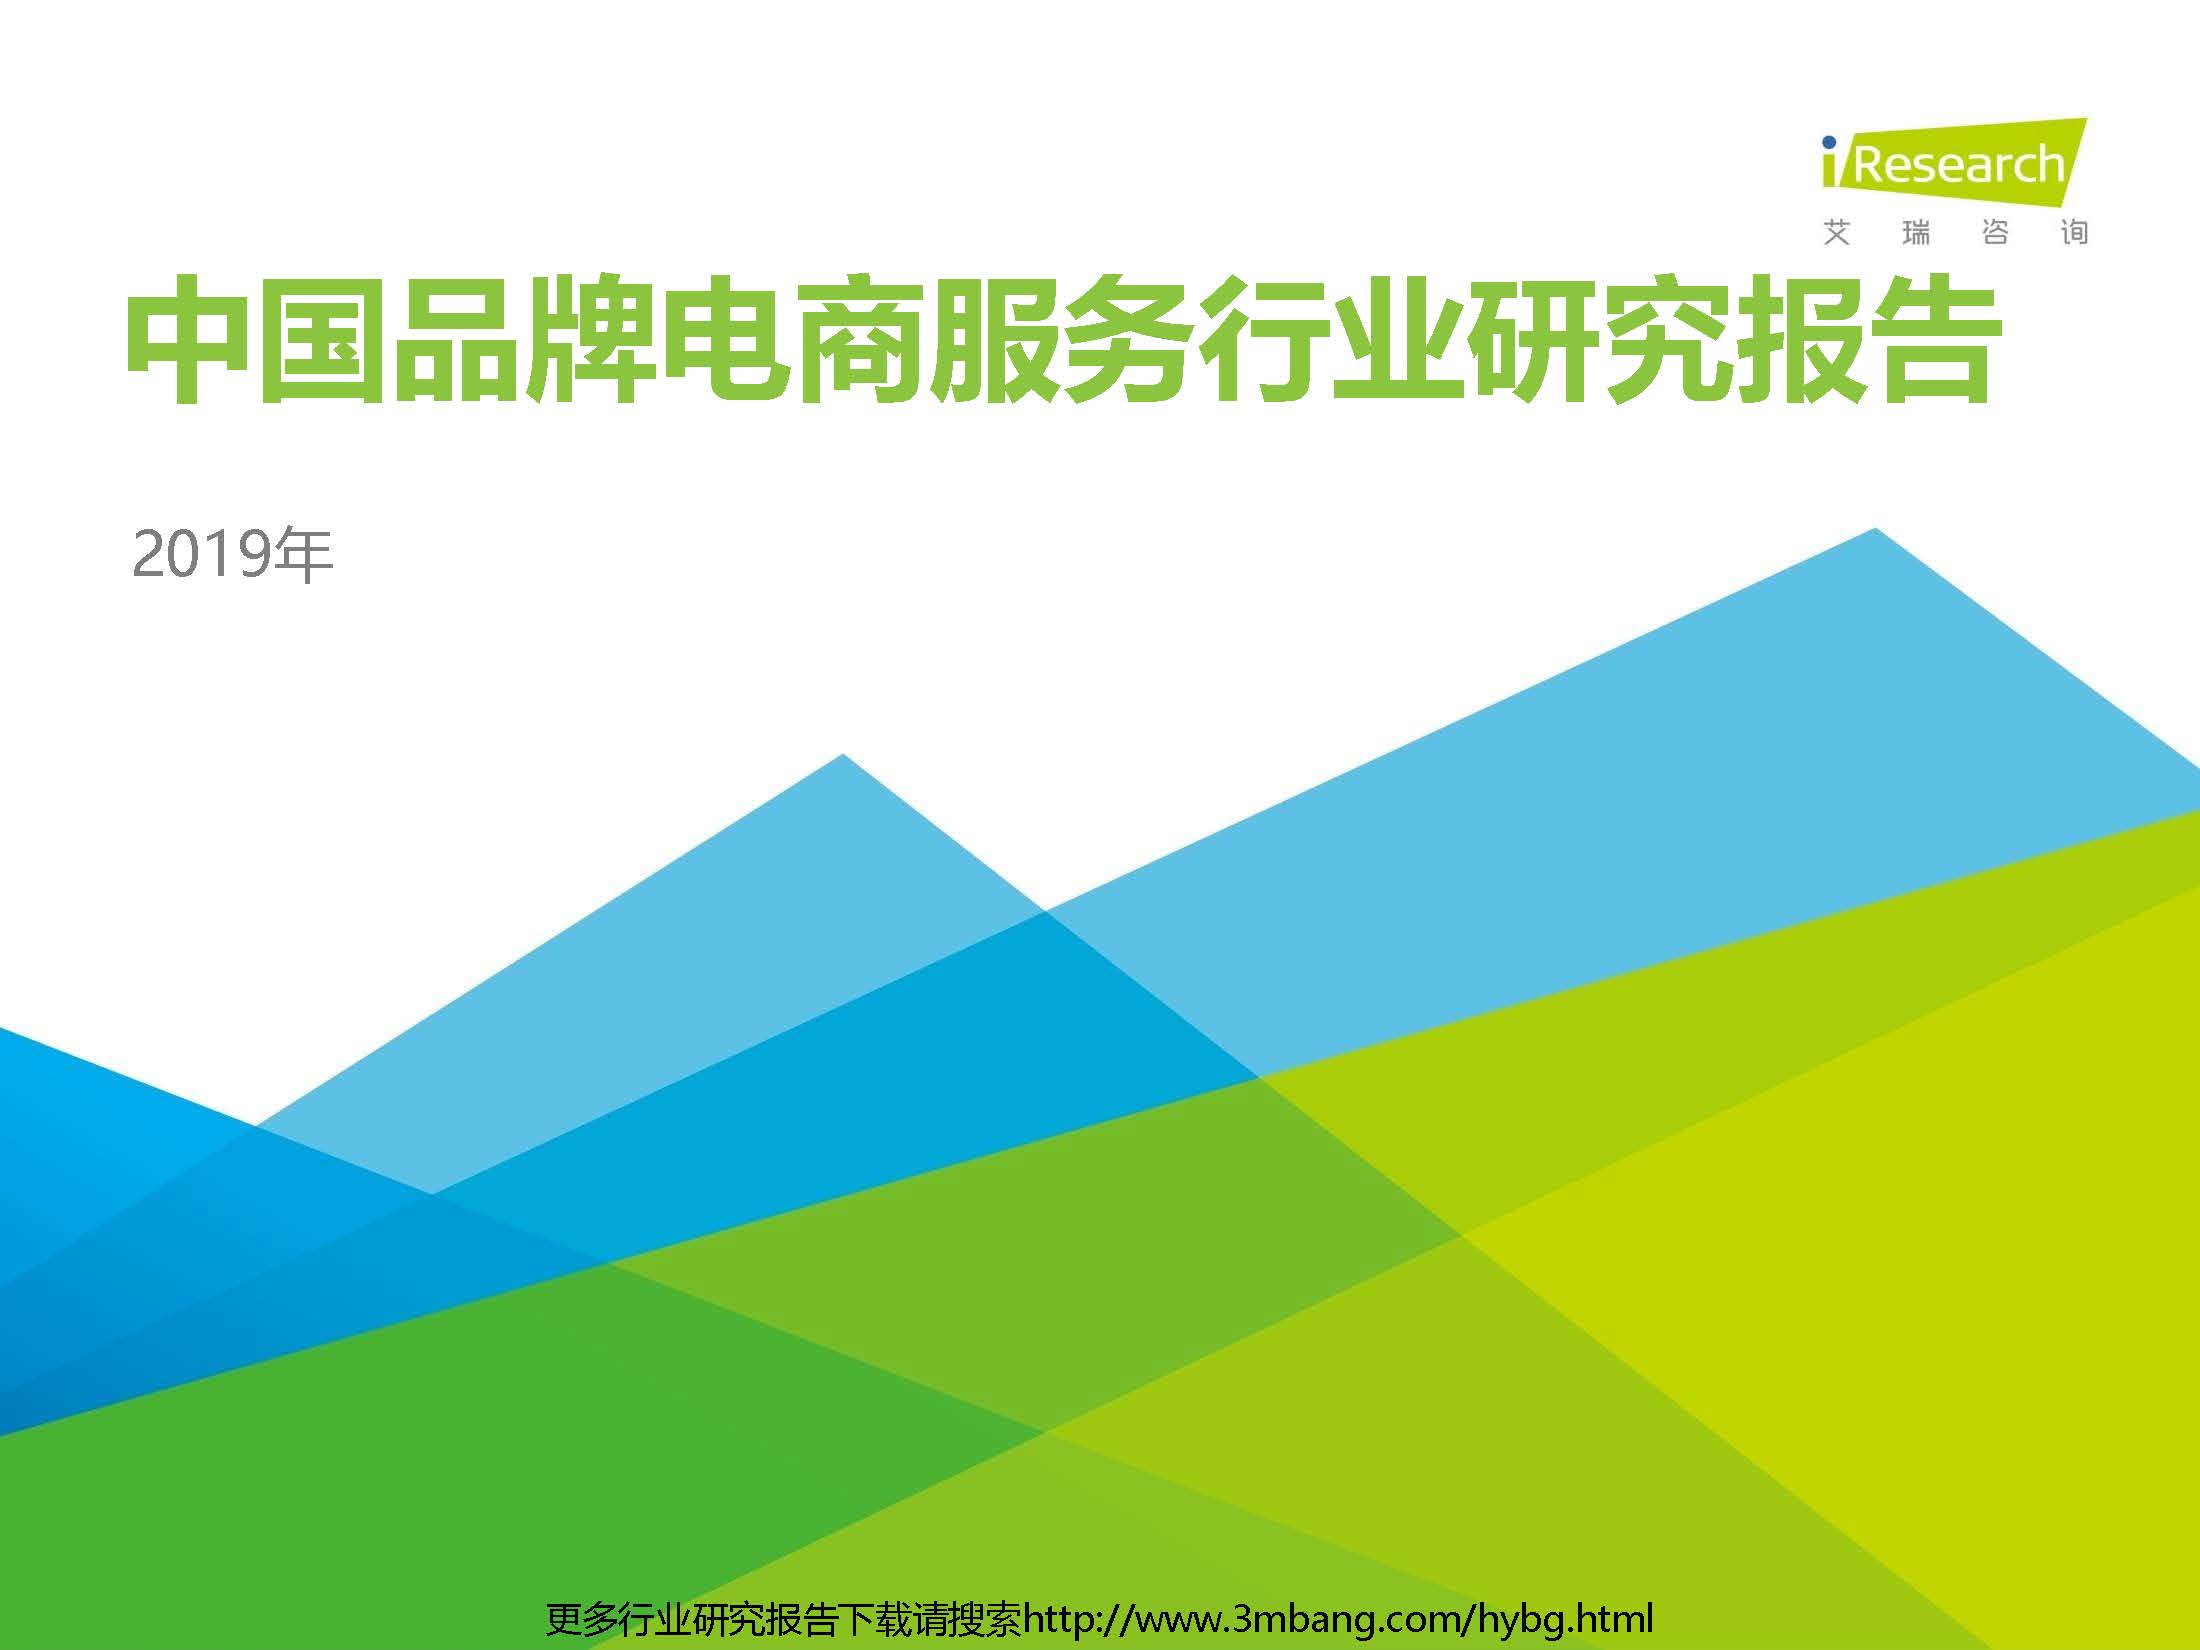 艾瑞：2019年中国品牌电商服务行业研究报告（附下载地址）